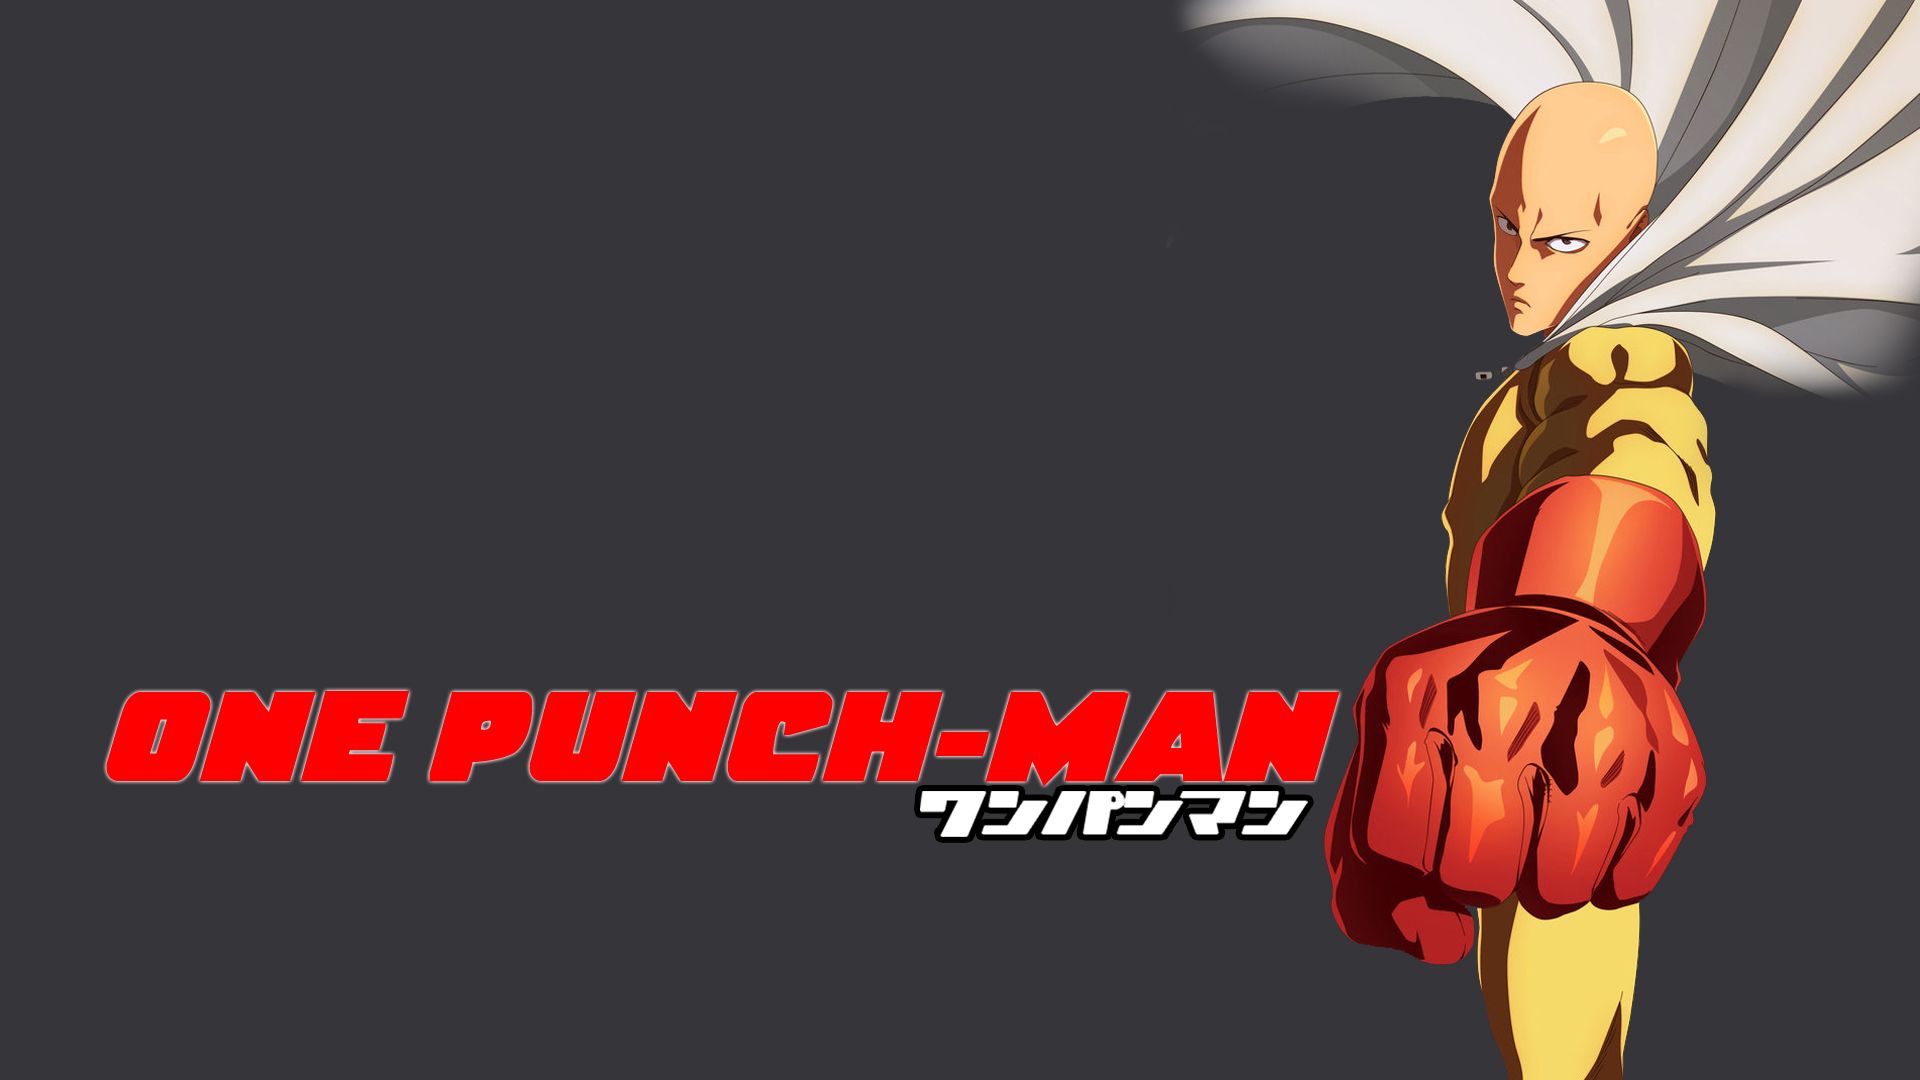 Papel de parede HD para desktop: Anime, Saitama (One Punch Man), One Punch  Man, Genos (One Punch Man) baixar imagem grátis #739022